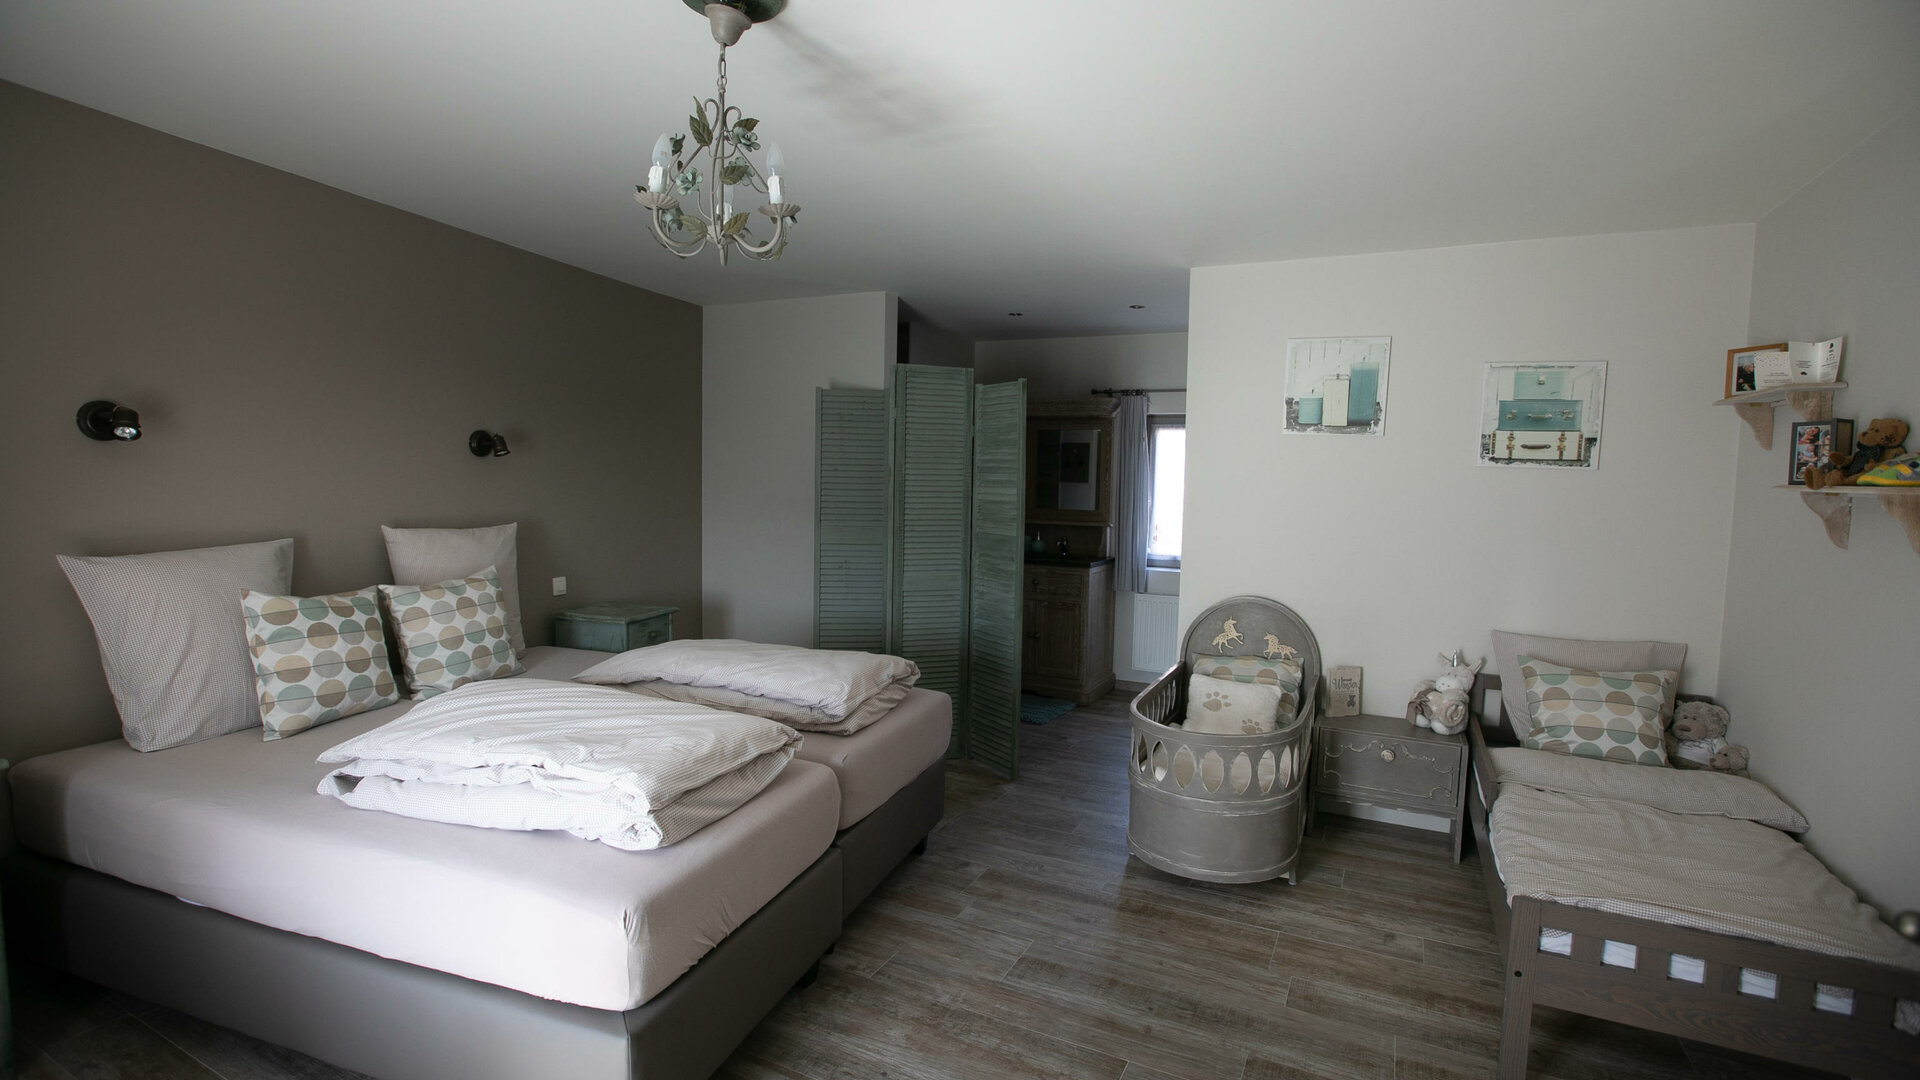 Het Eenhoornhof - Grote luxe kamer met twee kinderbedjes. Achteraan de badkamer met inloopdouche, lavabo en afgesloten toilet